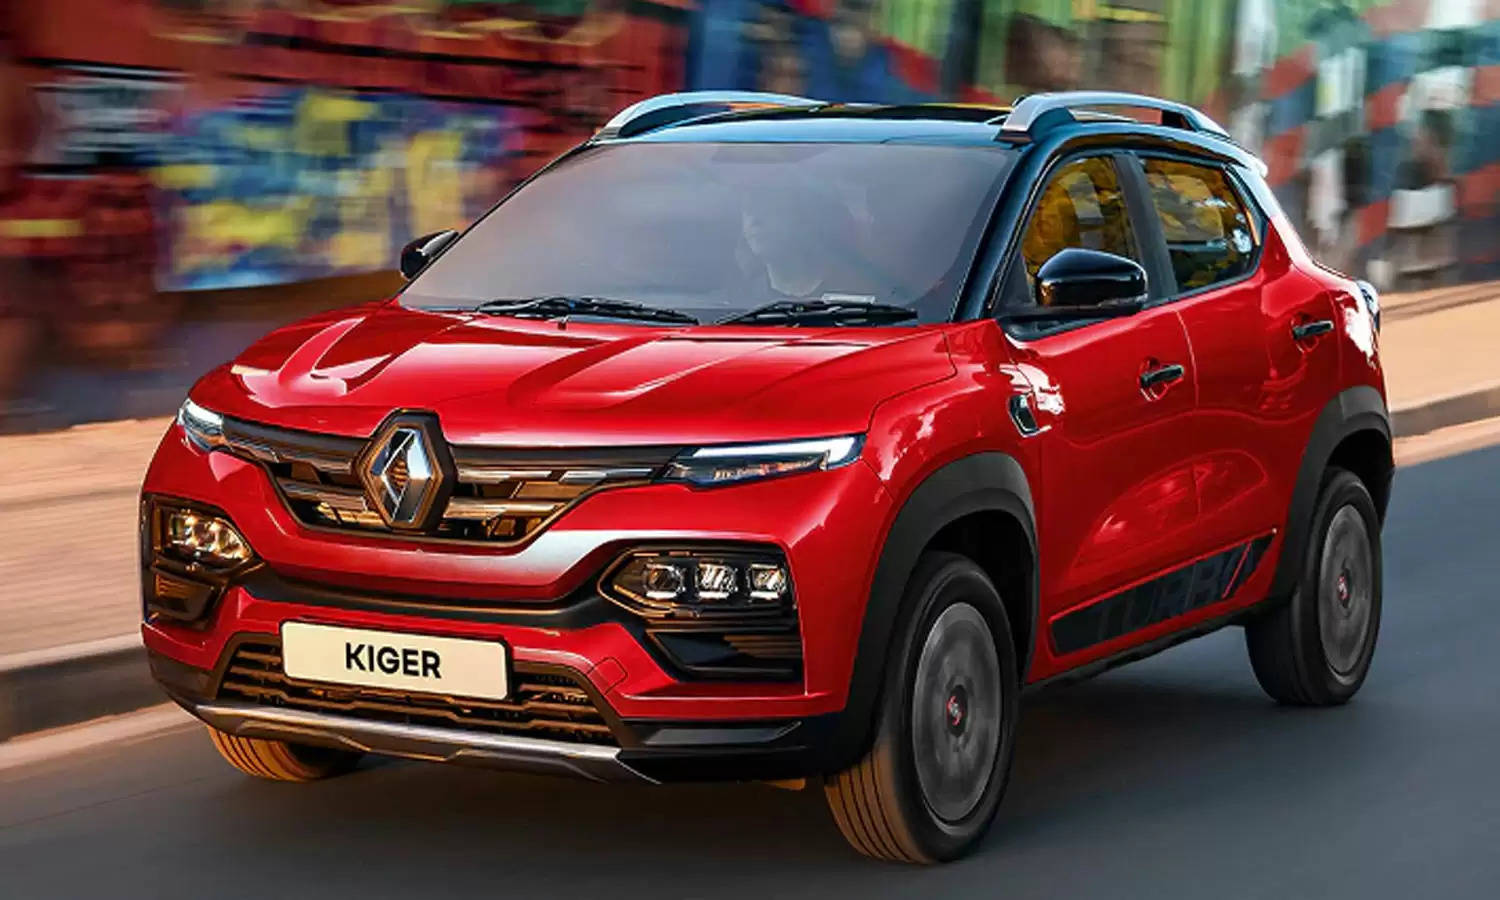 सिर्फ 68 हजार रुपये देकर खरीद लाएं Renault Kiger का बेस मॉडल, पावर और फीचर्स के मामले में है धाकड़, जानिए ऑफर डिटेल